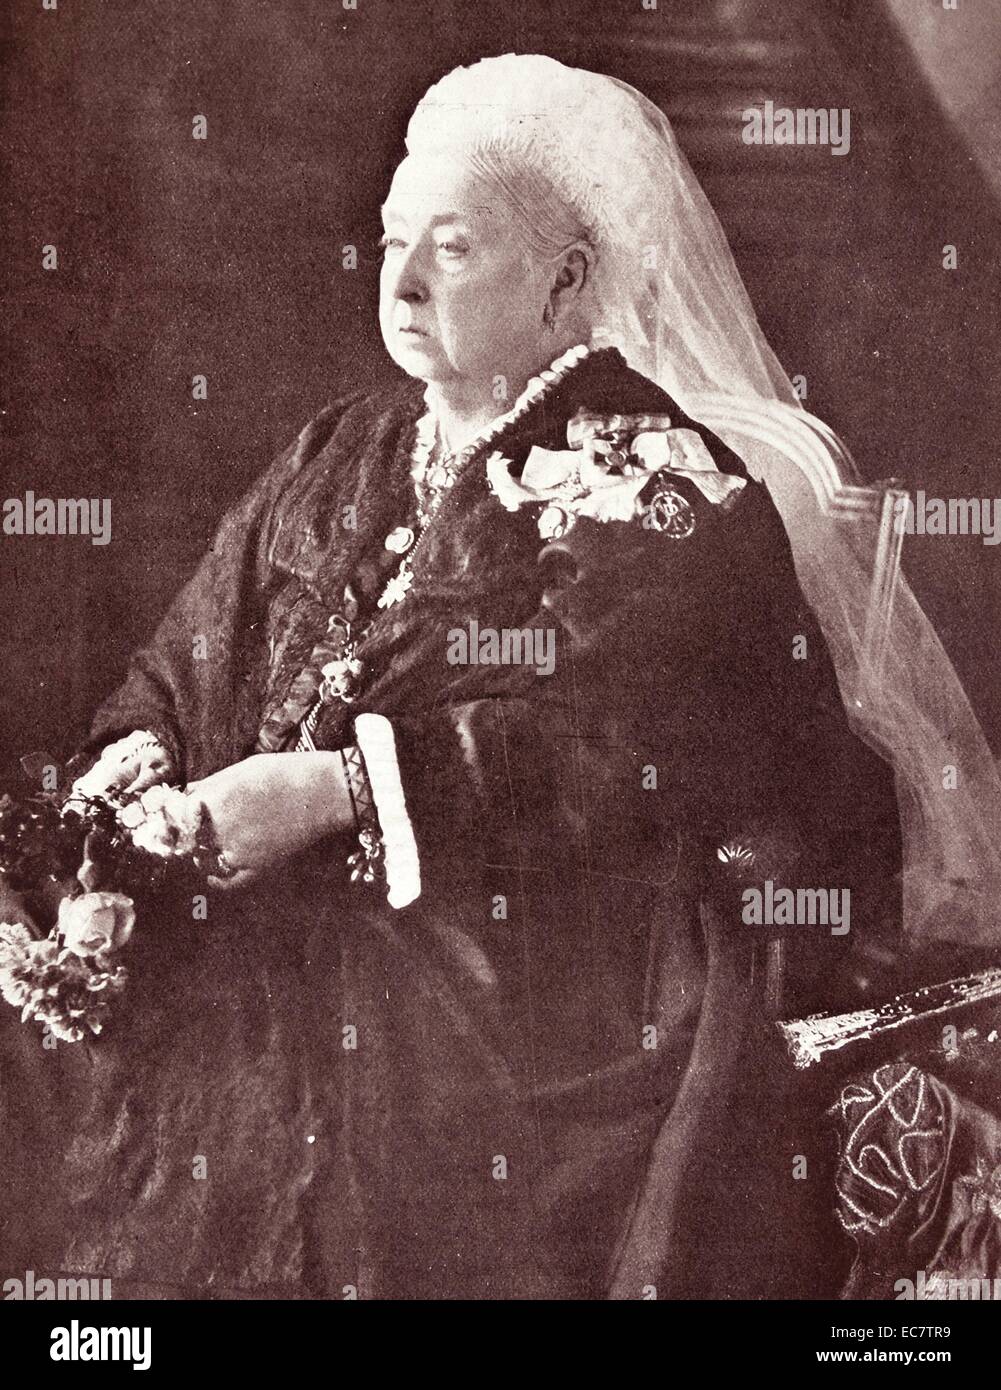 La regina Vittoria di Gran Bretagna 1899. Victoria (Alexandrina Victoria; 24 maggio 1819 - 22 gennaio 1901) era il monarca del Regno Unito di Gran Bretagna e Irlanda dal 20 giugno 1837 fino alla sua morte. A partire dal 1 maggio 1876, ha usato il titolo aggiuntivo di Empress of India Foto Stock